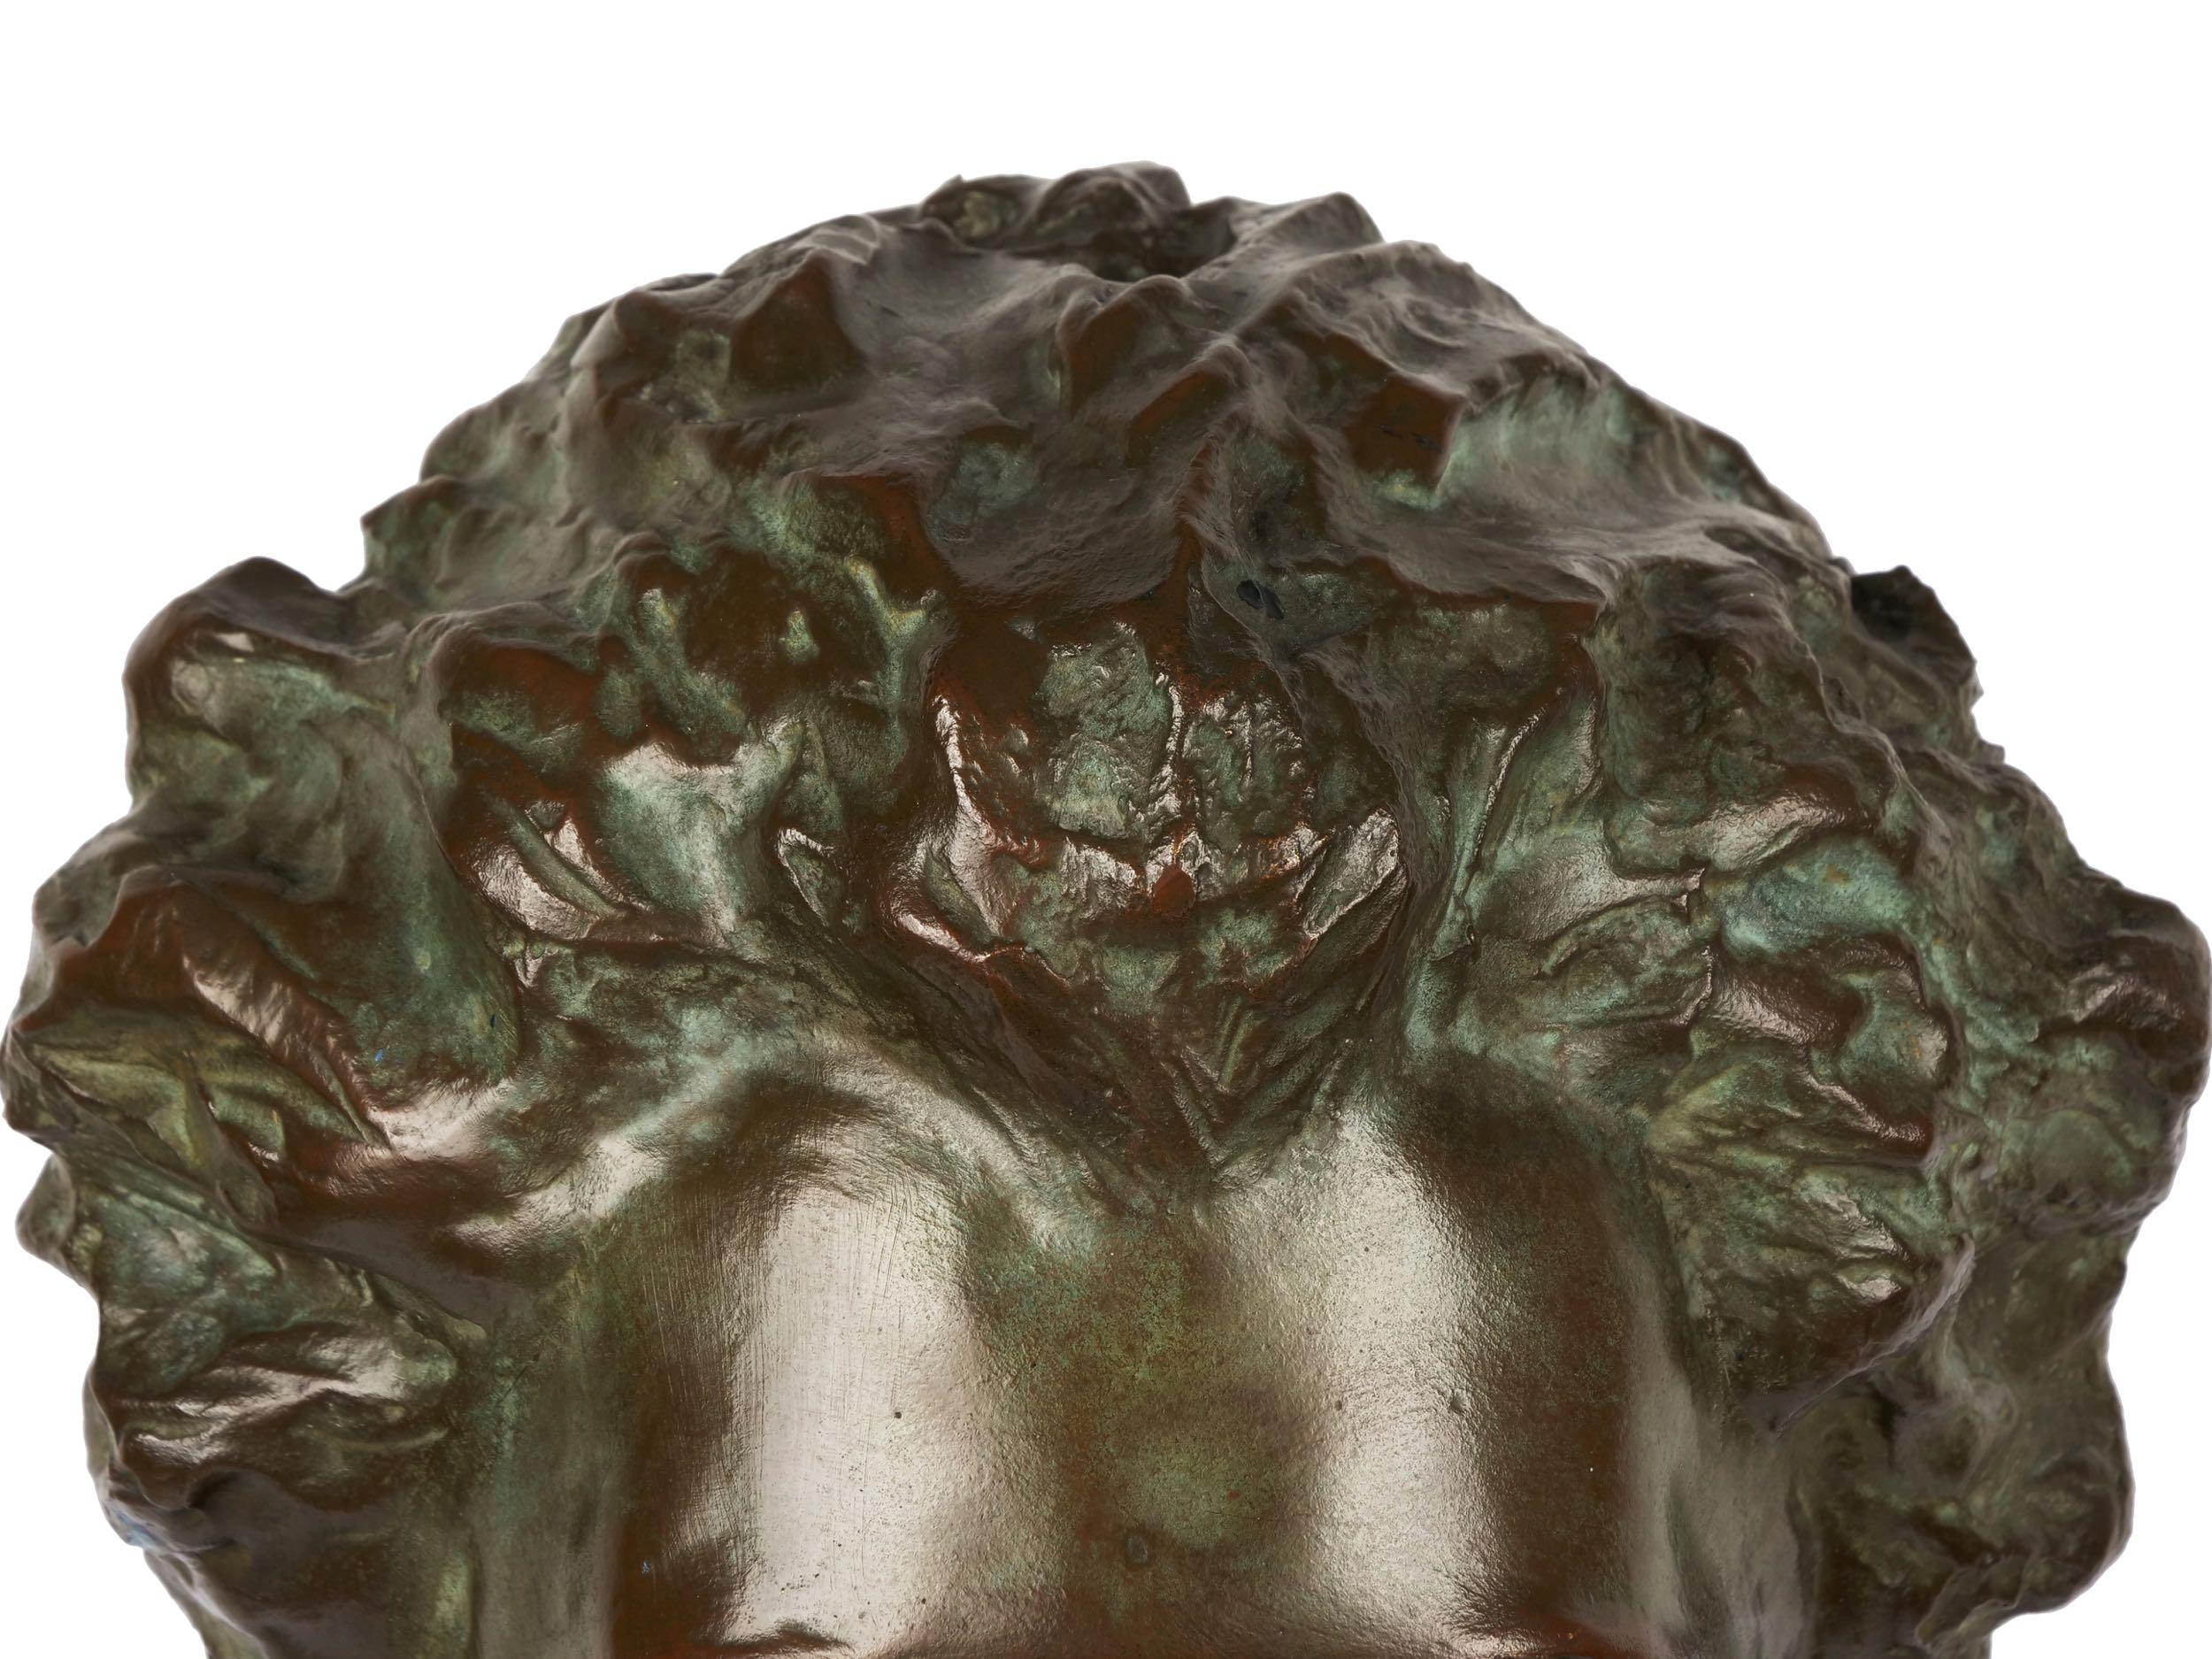 American Bronze Sculpture “Bust of Mozart” by Edith Lichtenstein & Gorham  12